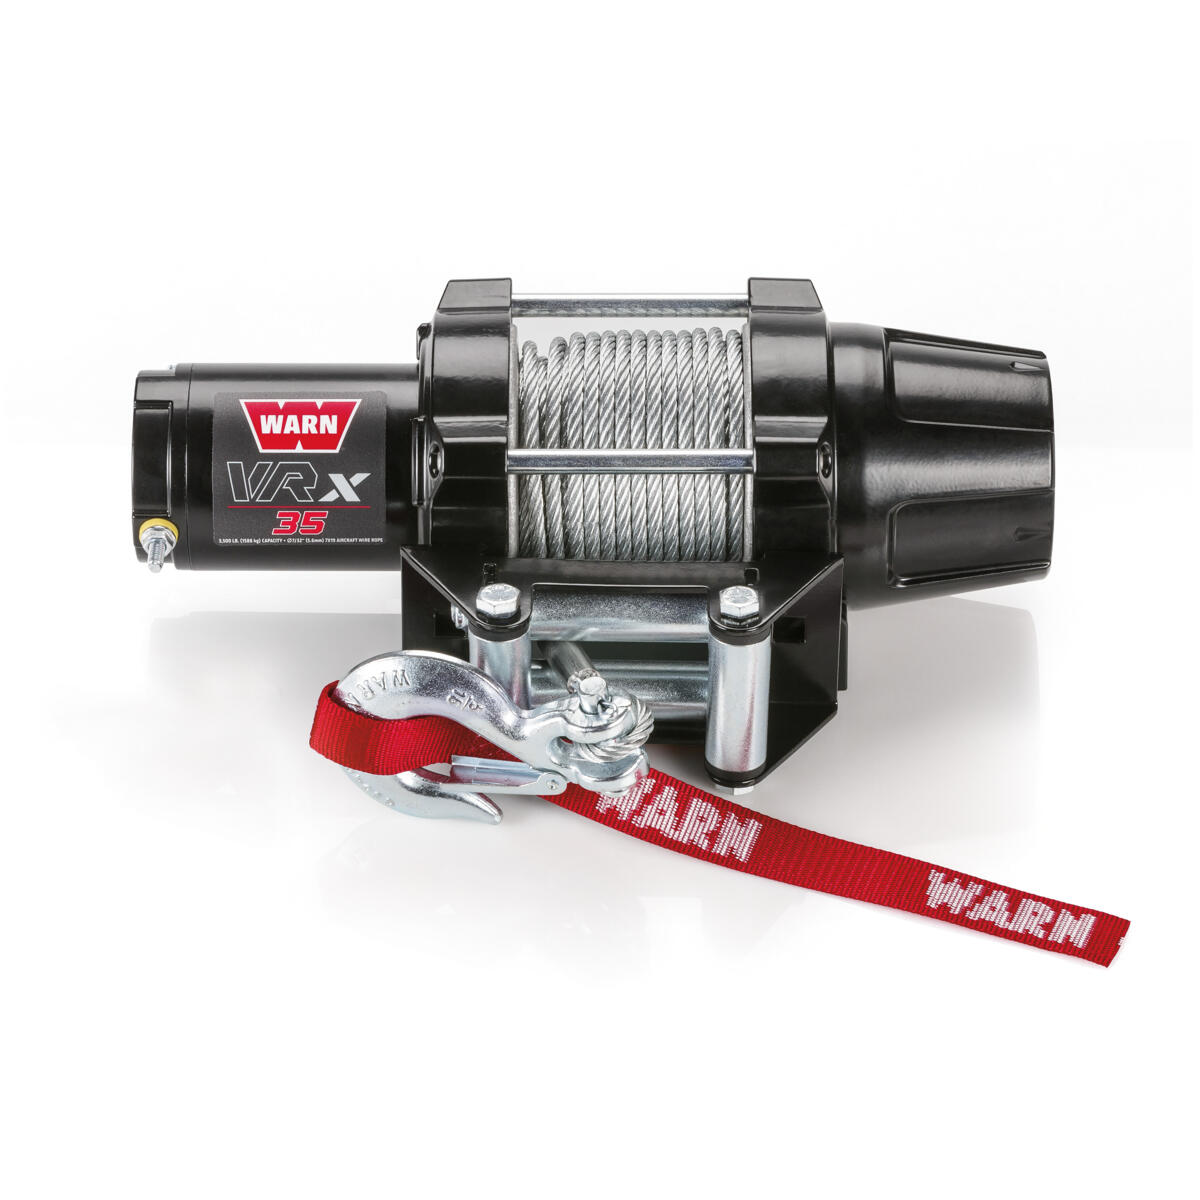 Naviják WARN® VRX s celokovovou konstrukcí a 15,24 metry ocelového lana obsahuje novou spojku vyvinutou z konstrukce uzávěrky náboje pohonu WARN® 4WD.